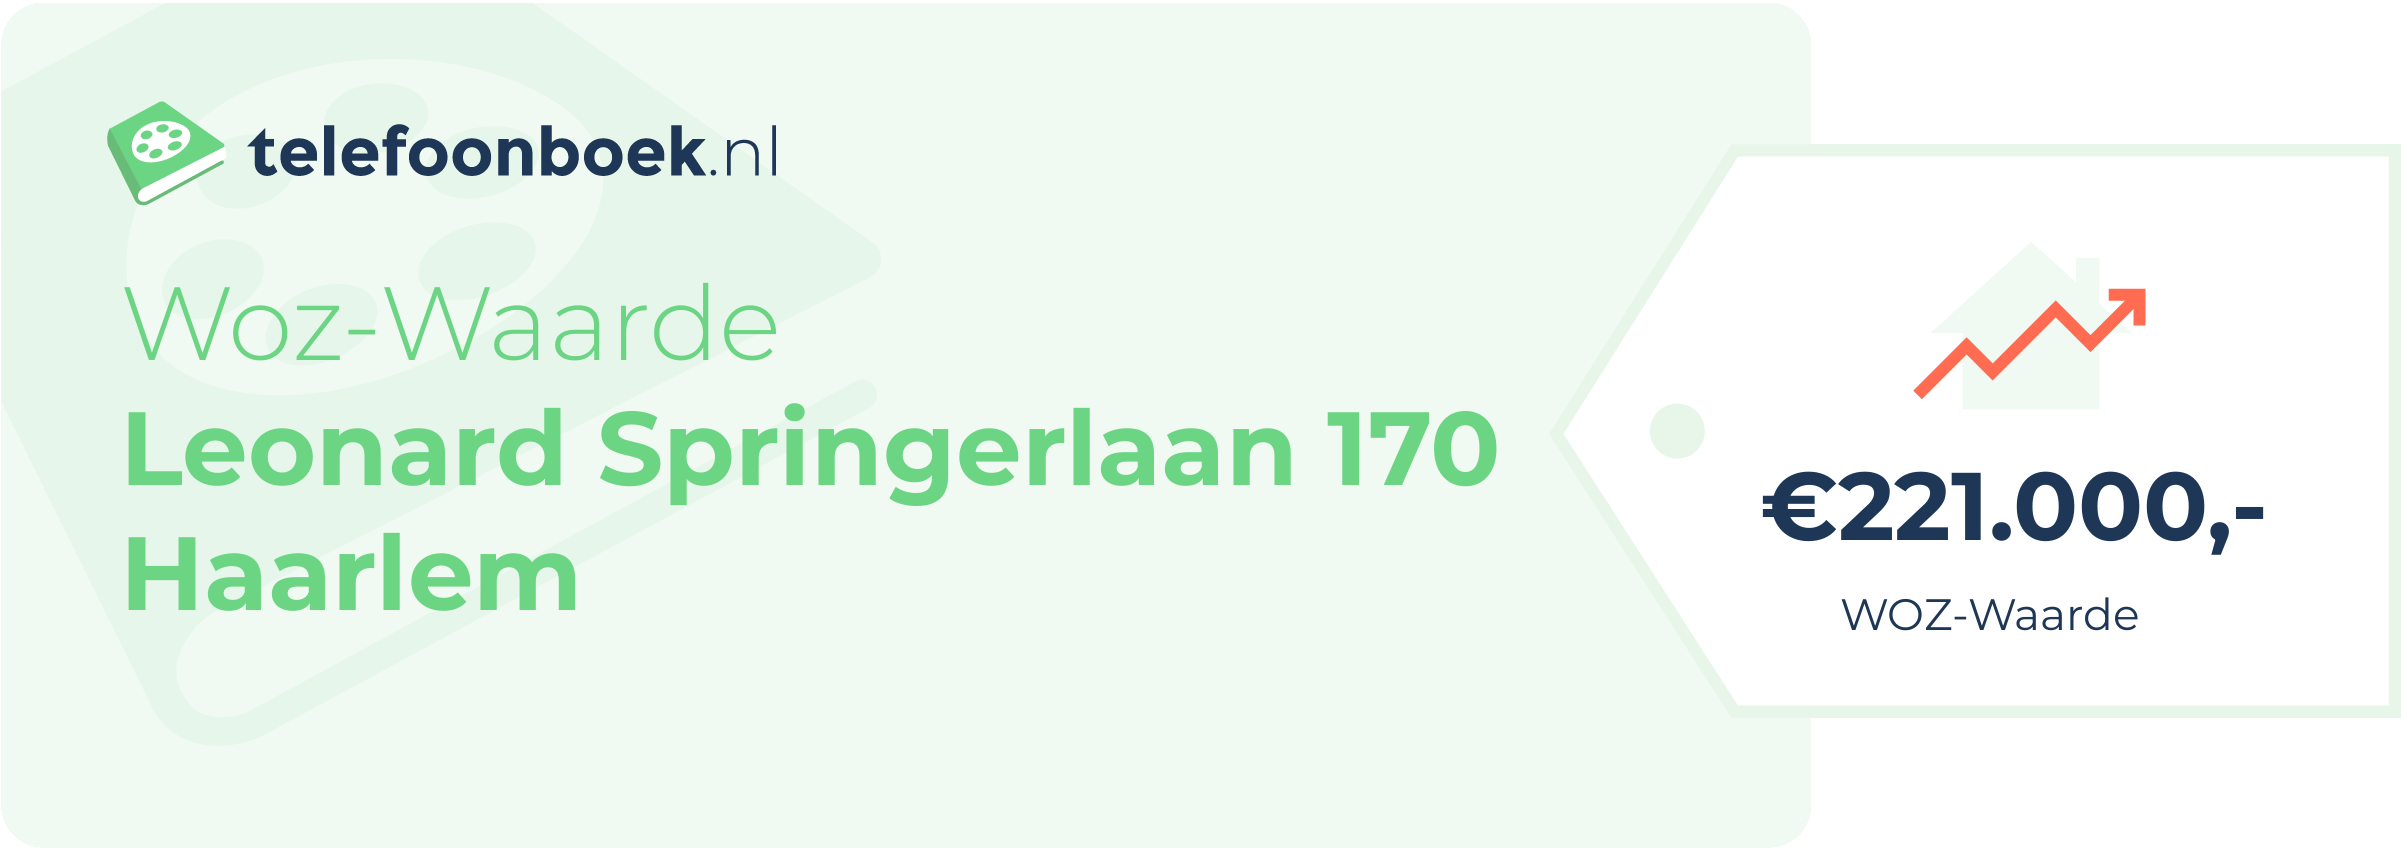 WOZ-waarde Leonard Springerlaan 170 Haarlem